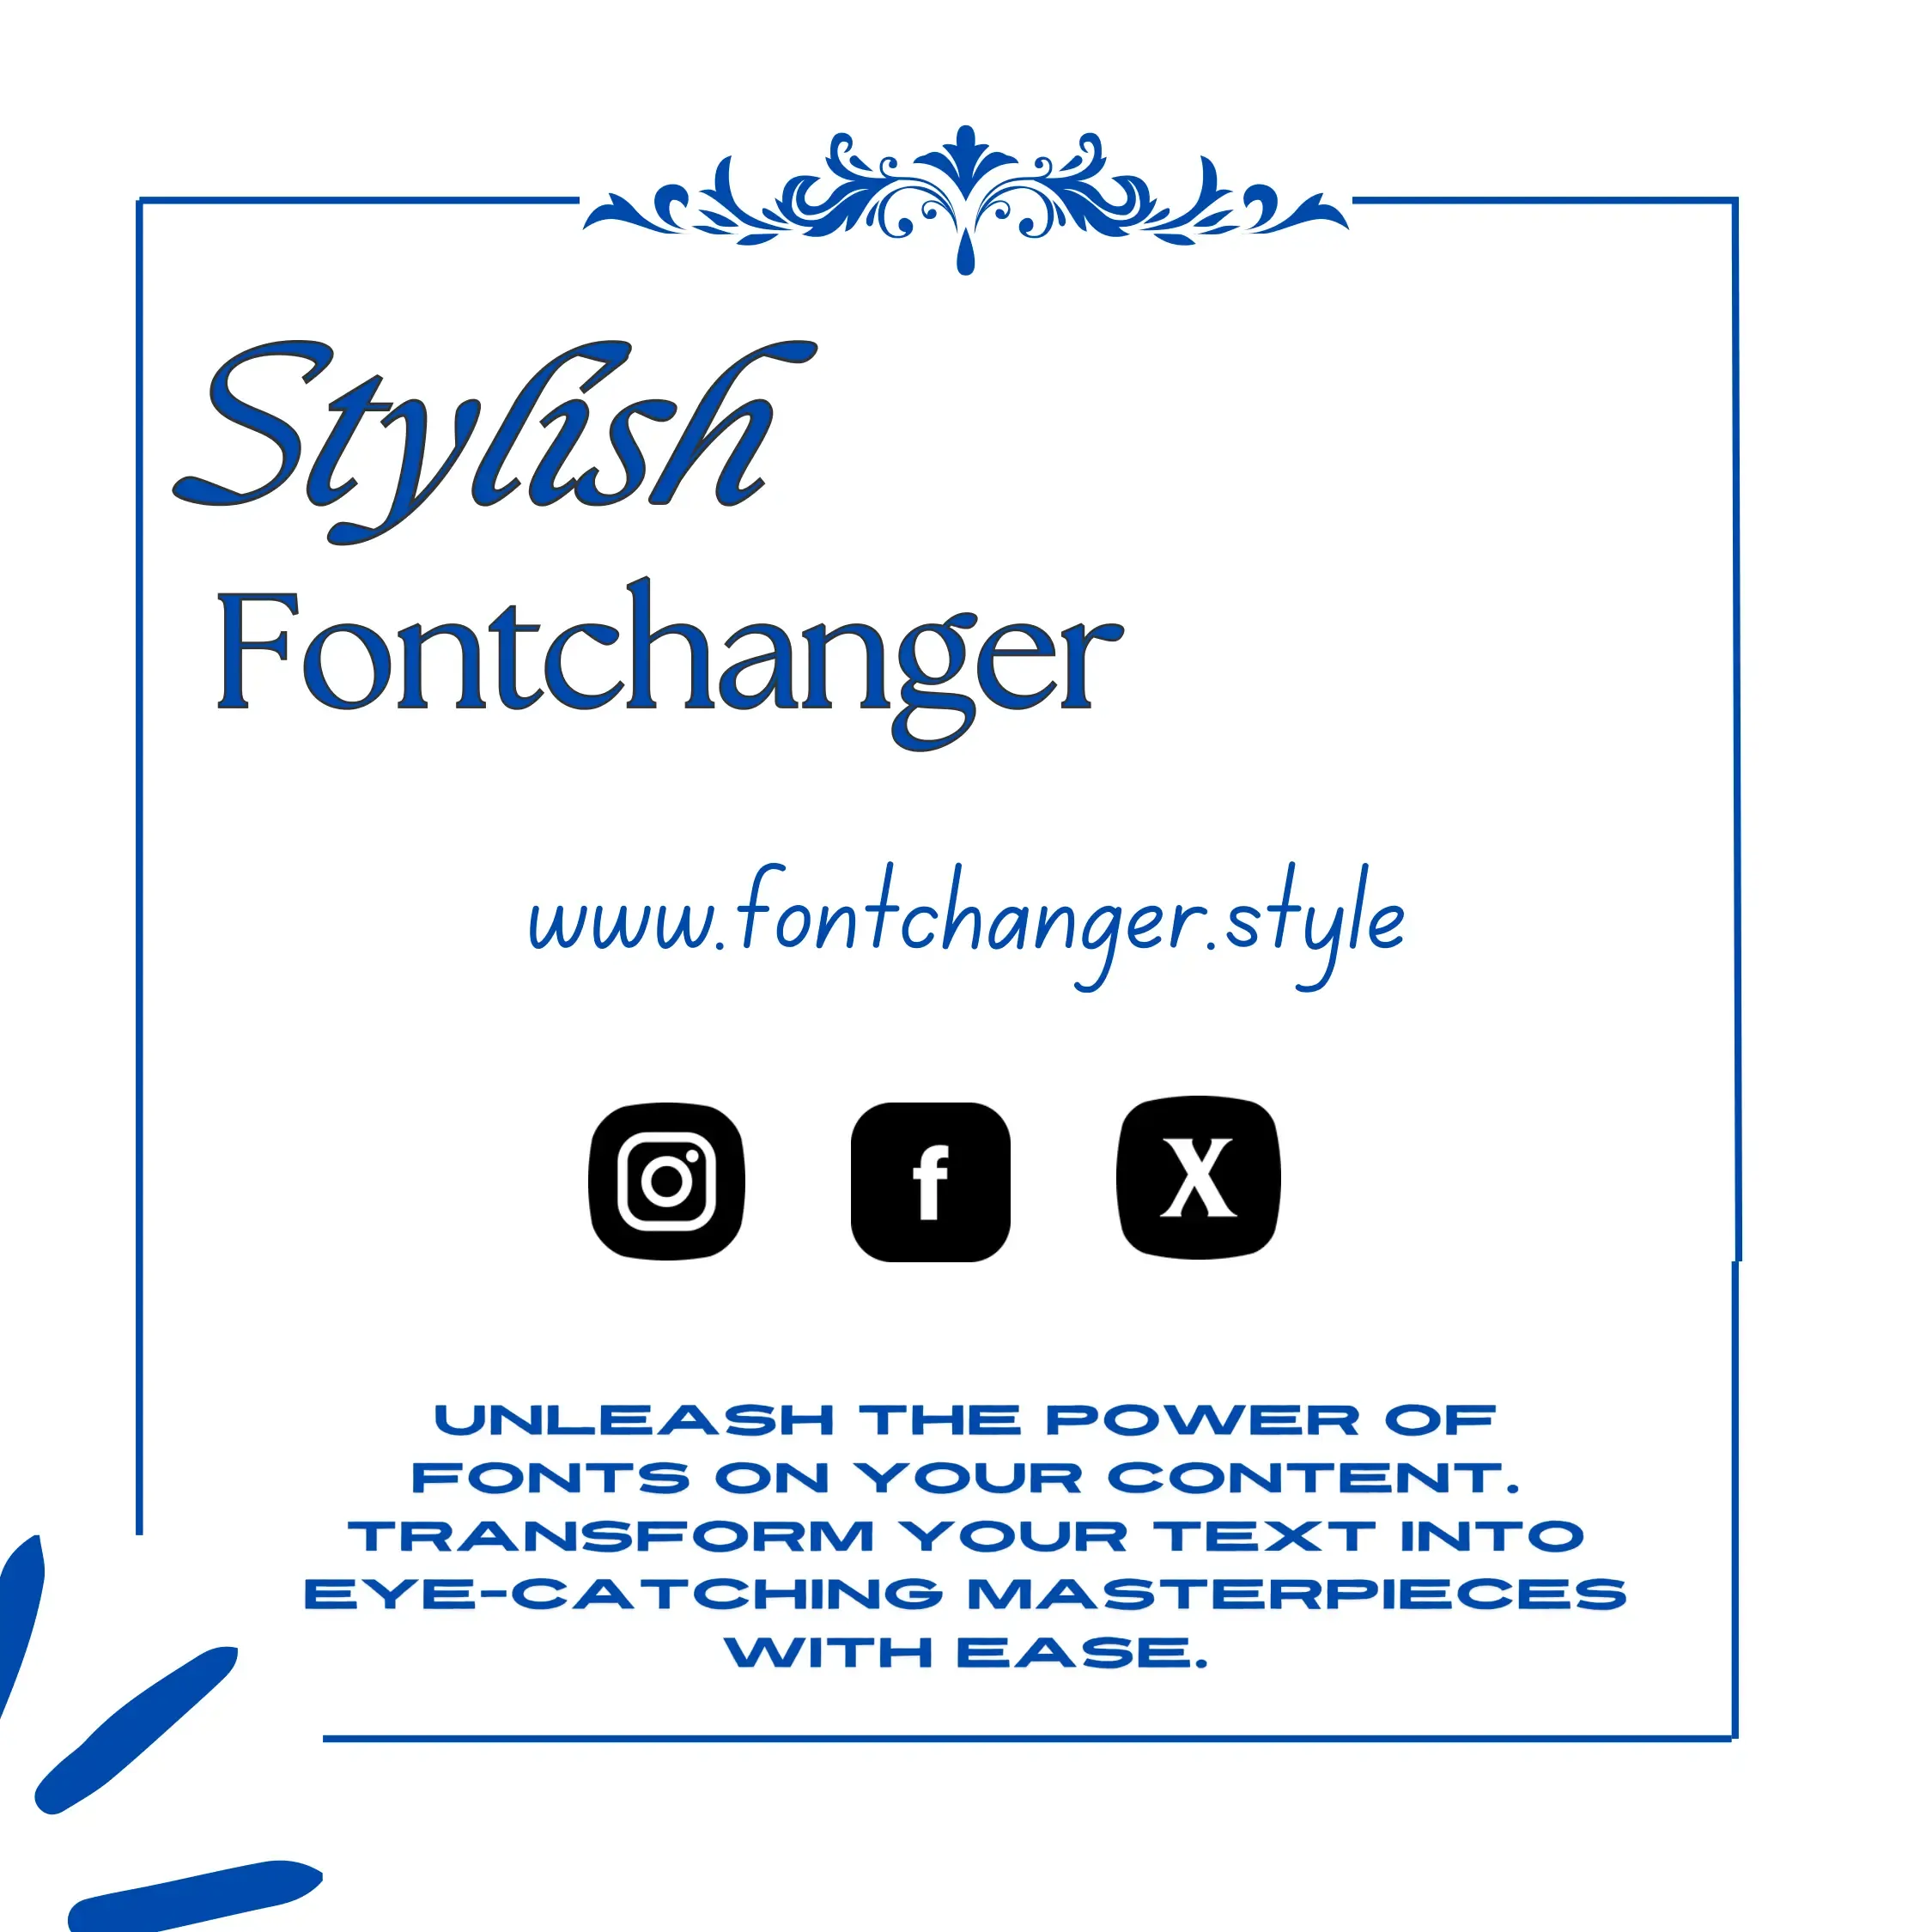 Font Changer - www.fontchanger.style Explain Font Changer website